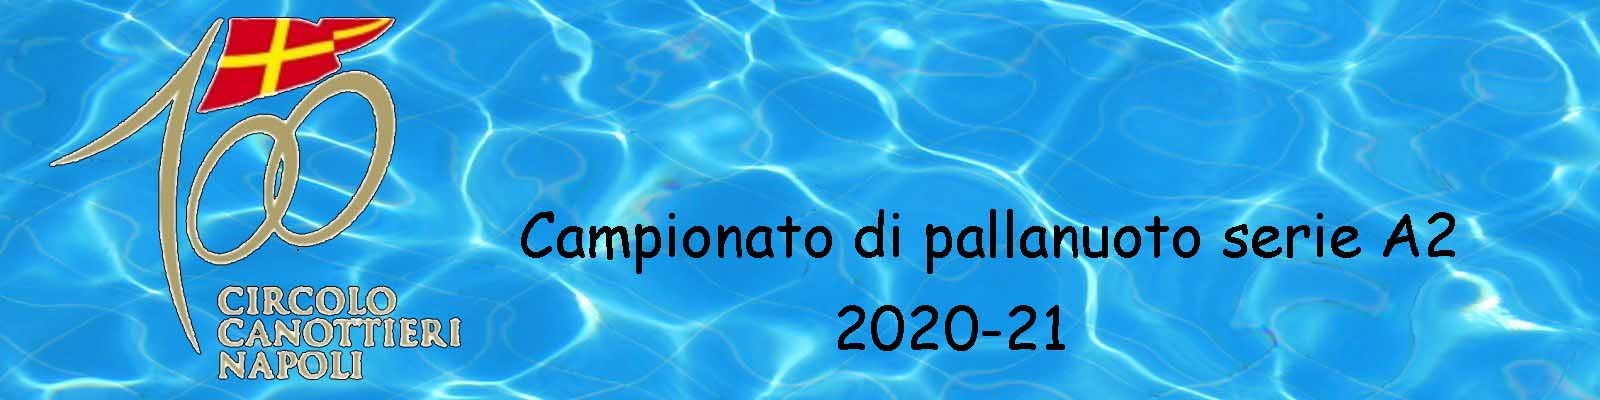 Canottieri anno 2020-21